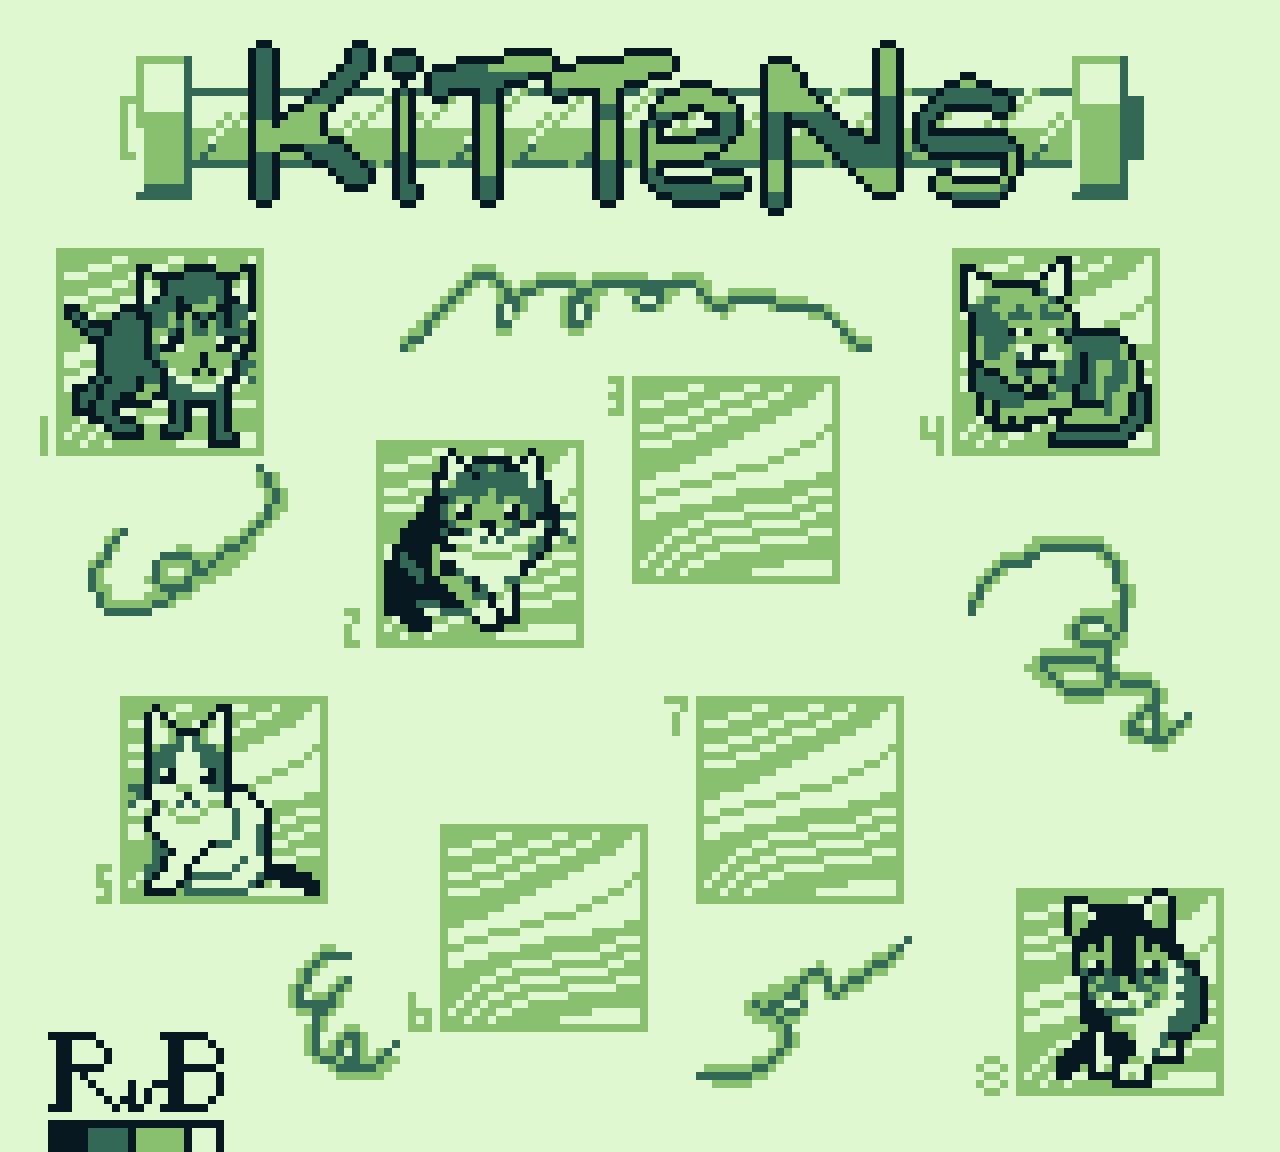 pixel art of kitten sprites, each 24 by 24 pixels